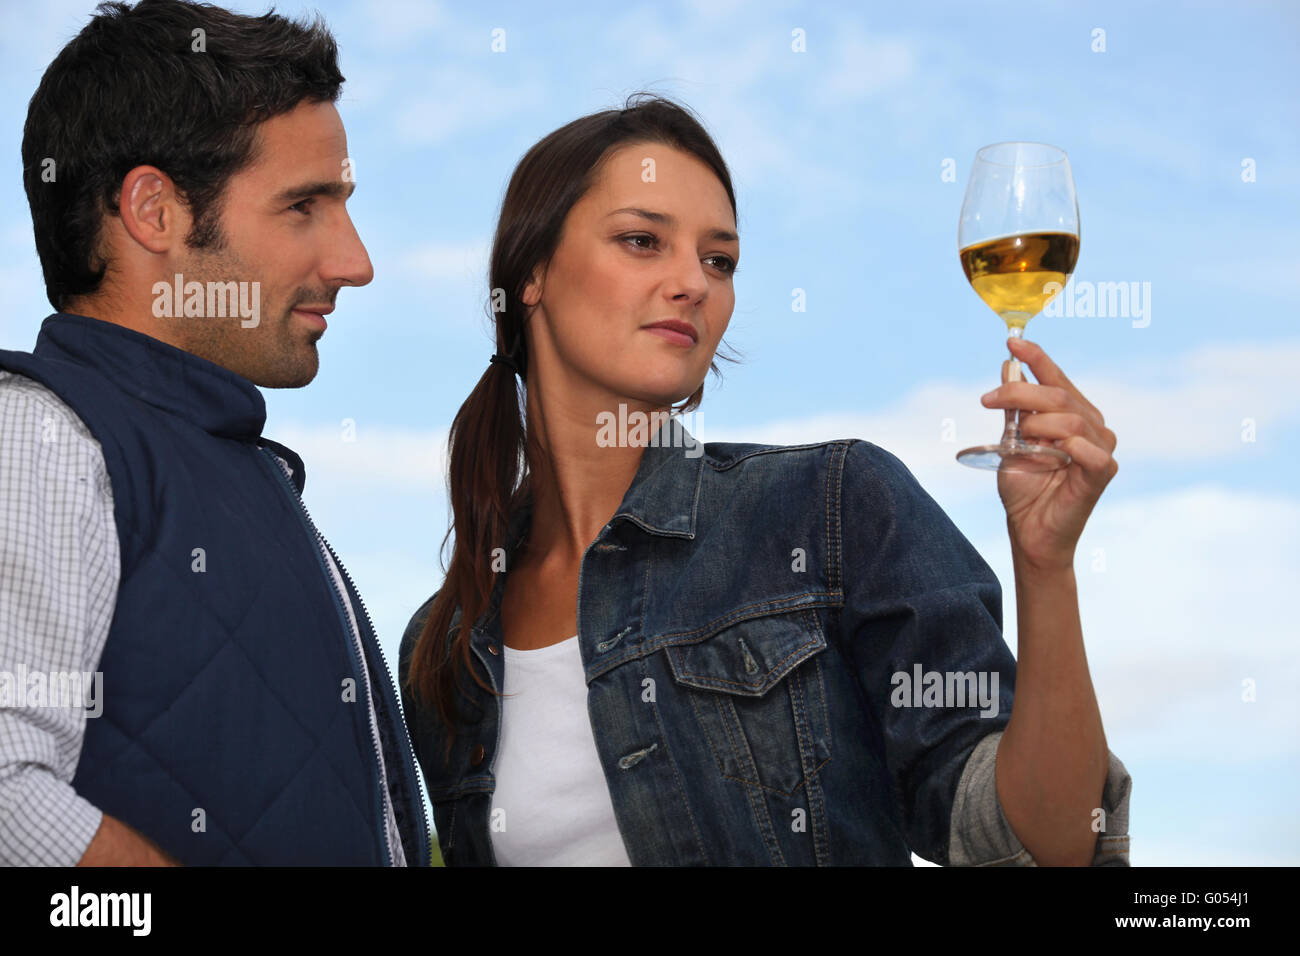 Frau mit Getränk neben Mann Stockfoto